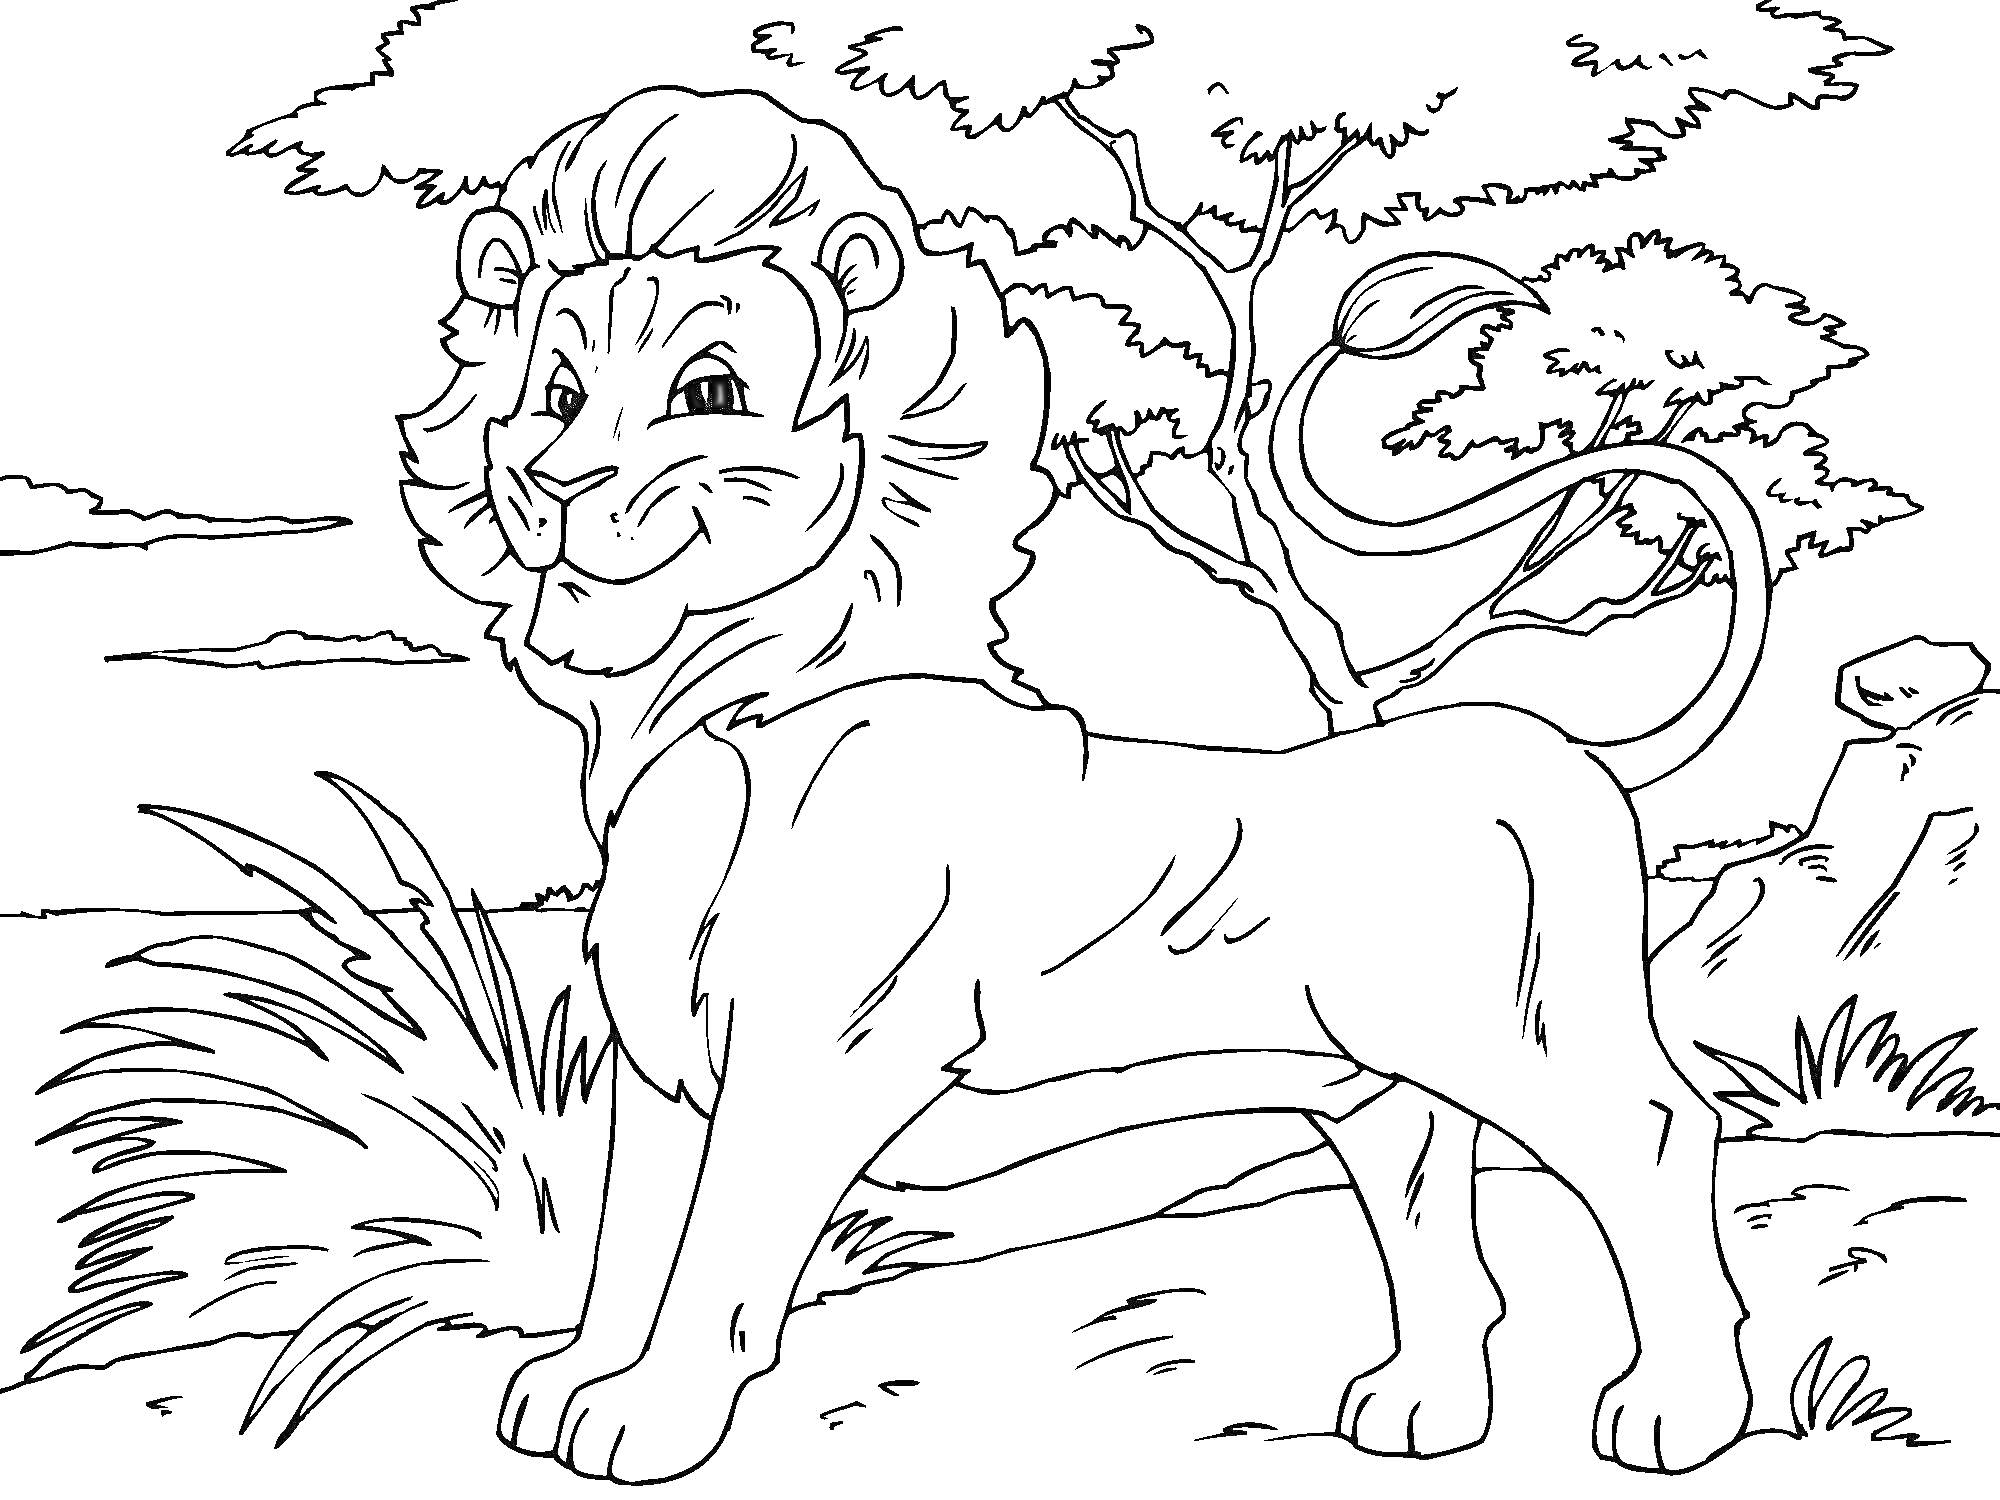 Раскраска Лев в африканской саванне. На изображении лев стоит на фоне деревьев и травы.